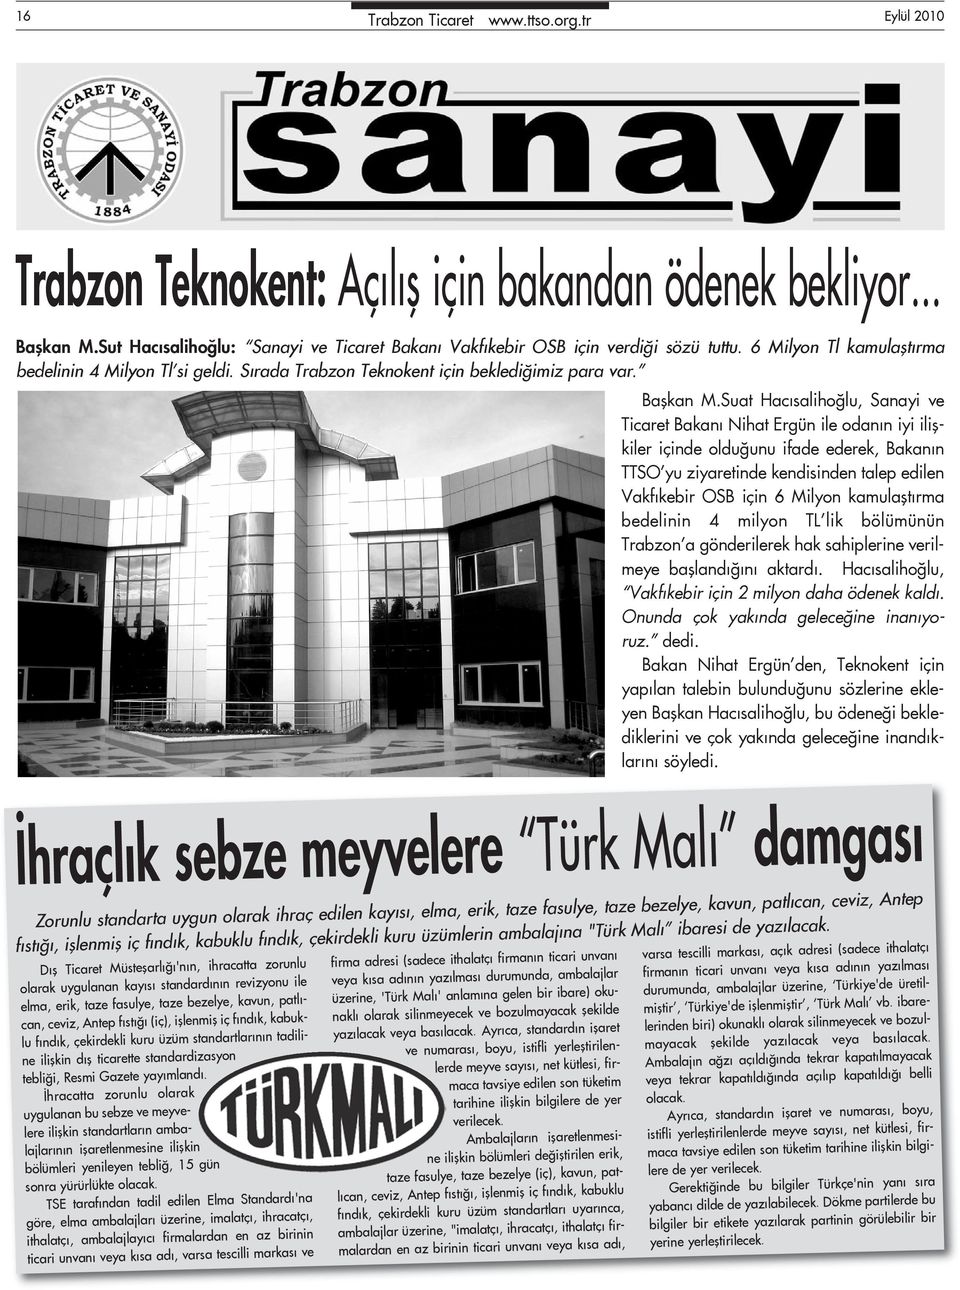 Suat Hacısalihoğlu, Sanayi ve Ticaret Bakanı Nihat Ergün ile odanın iyi ilişkiler içinde olduğunu ifade ederek, Bakanın TTSO yu ziyaretinde kendisinden talep edilen Vakfıkebir OSB için 6 Milyon